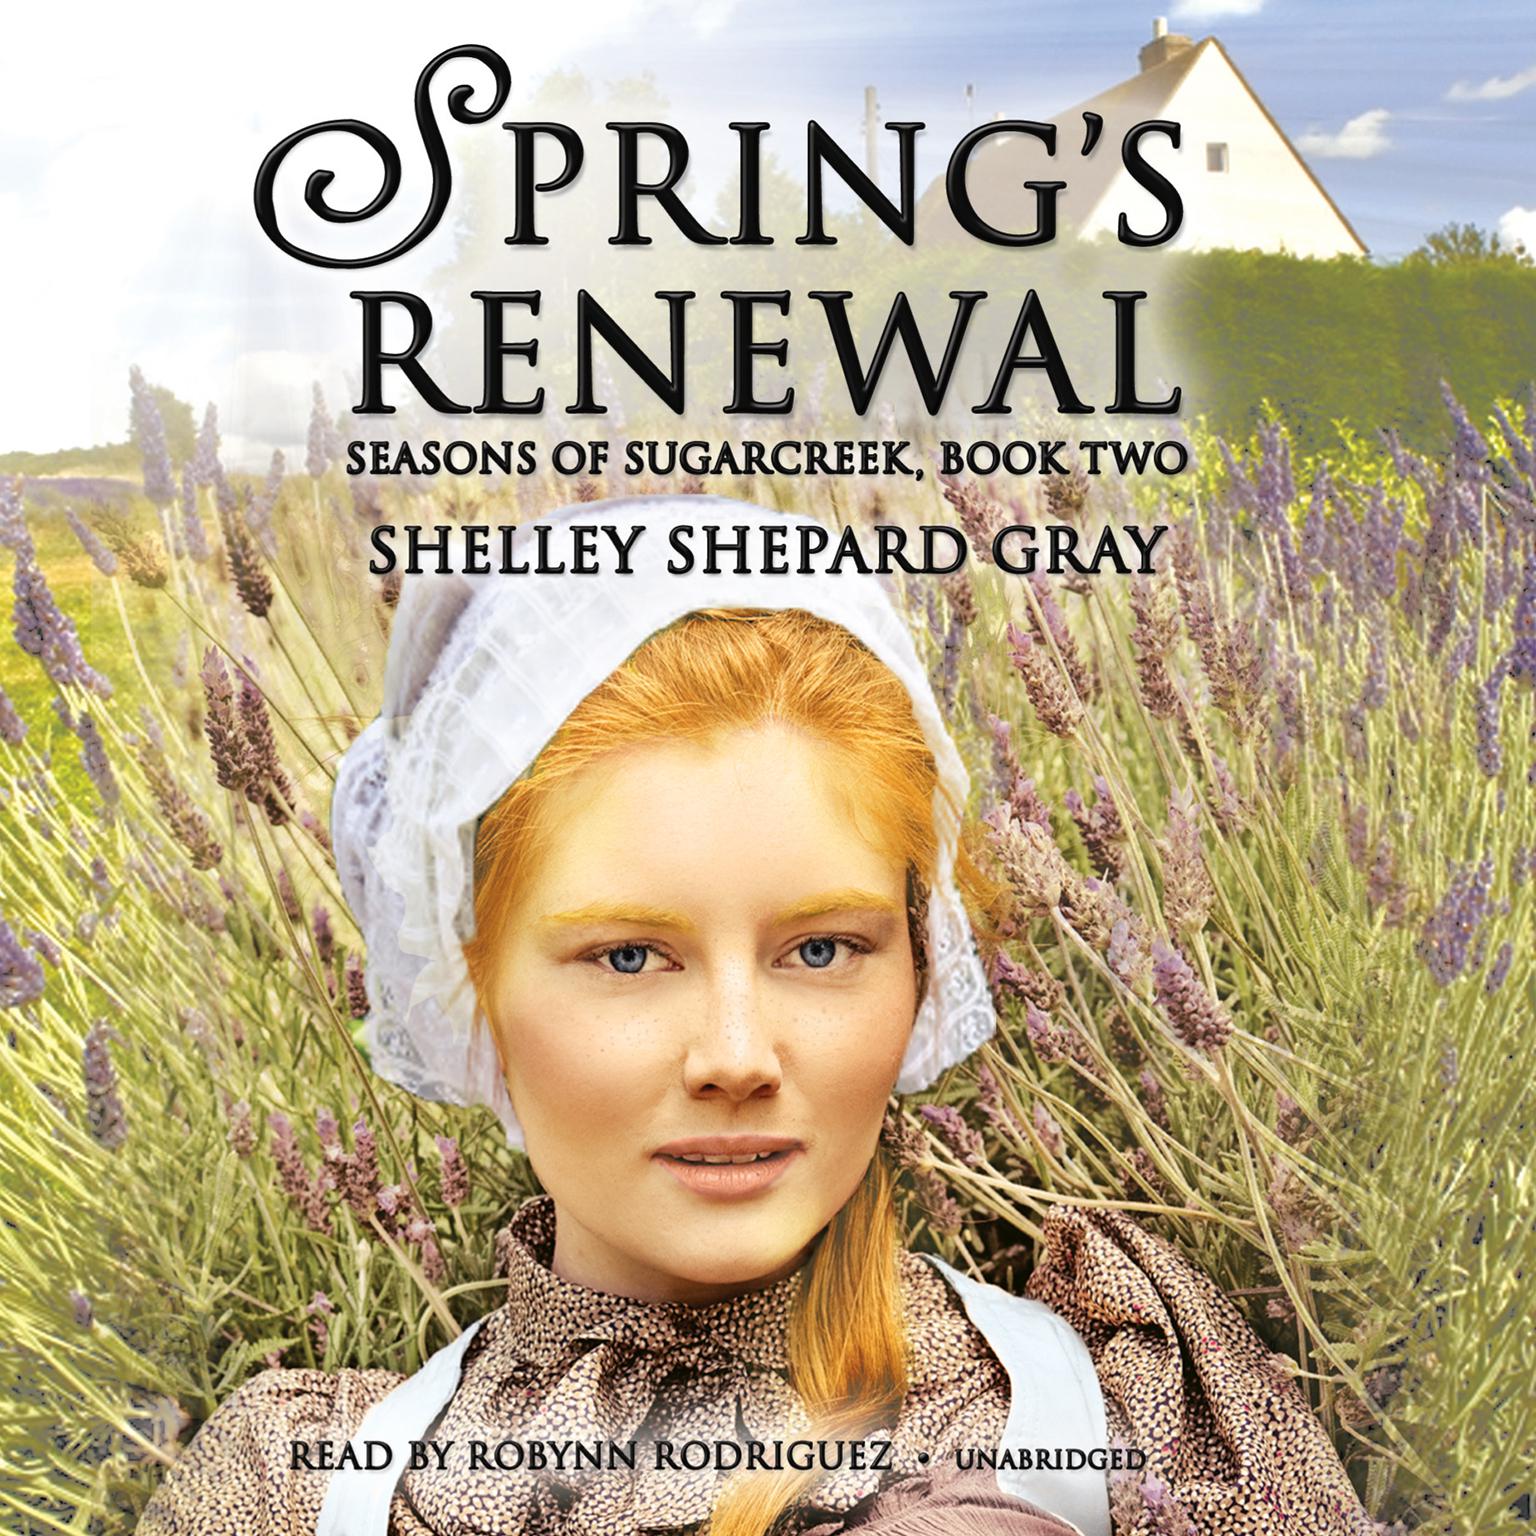 Spring’s Renewal: Seasons of Sugarcreek, Book Two Audiobook, by Shelley Shepard Gray